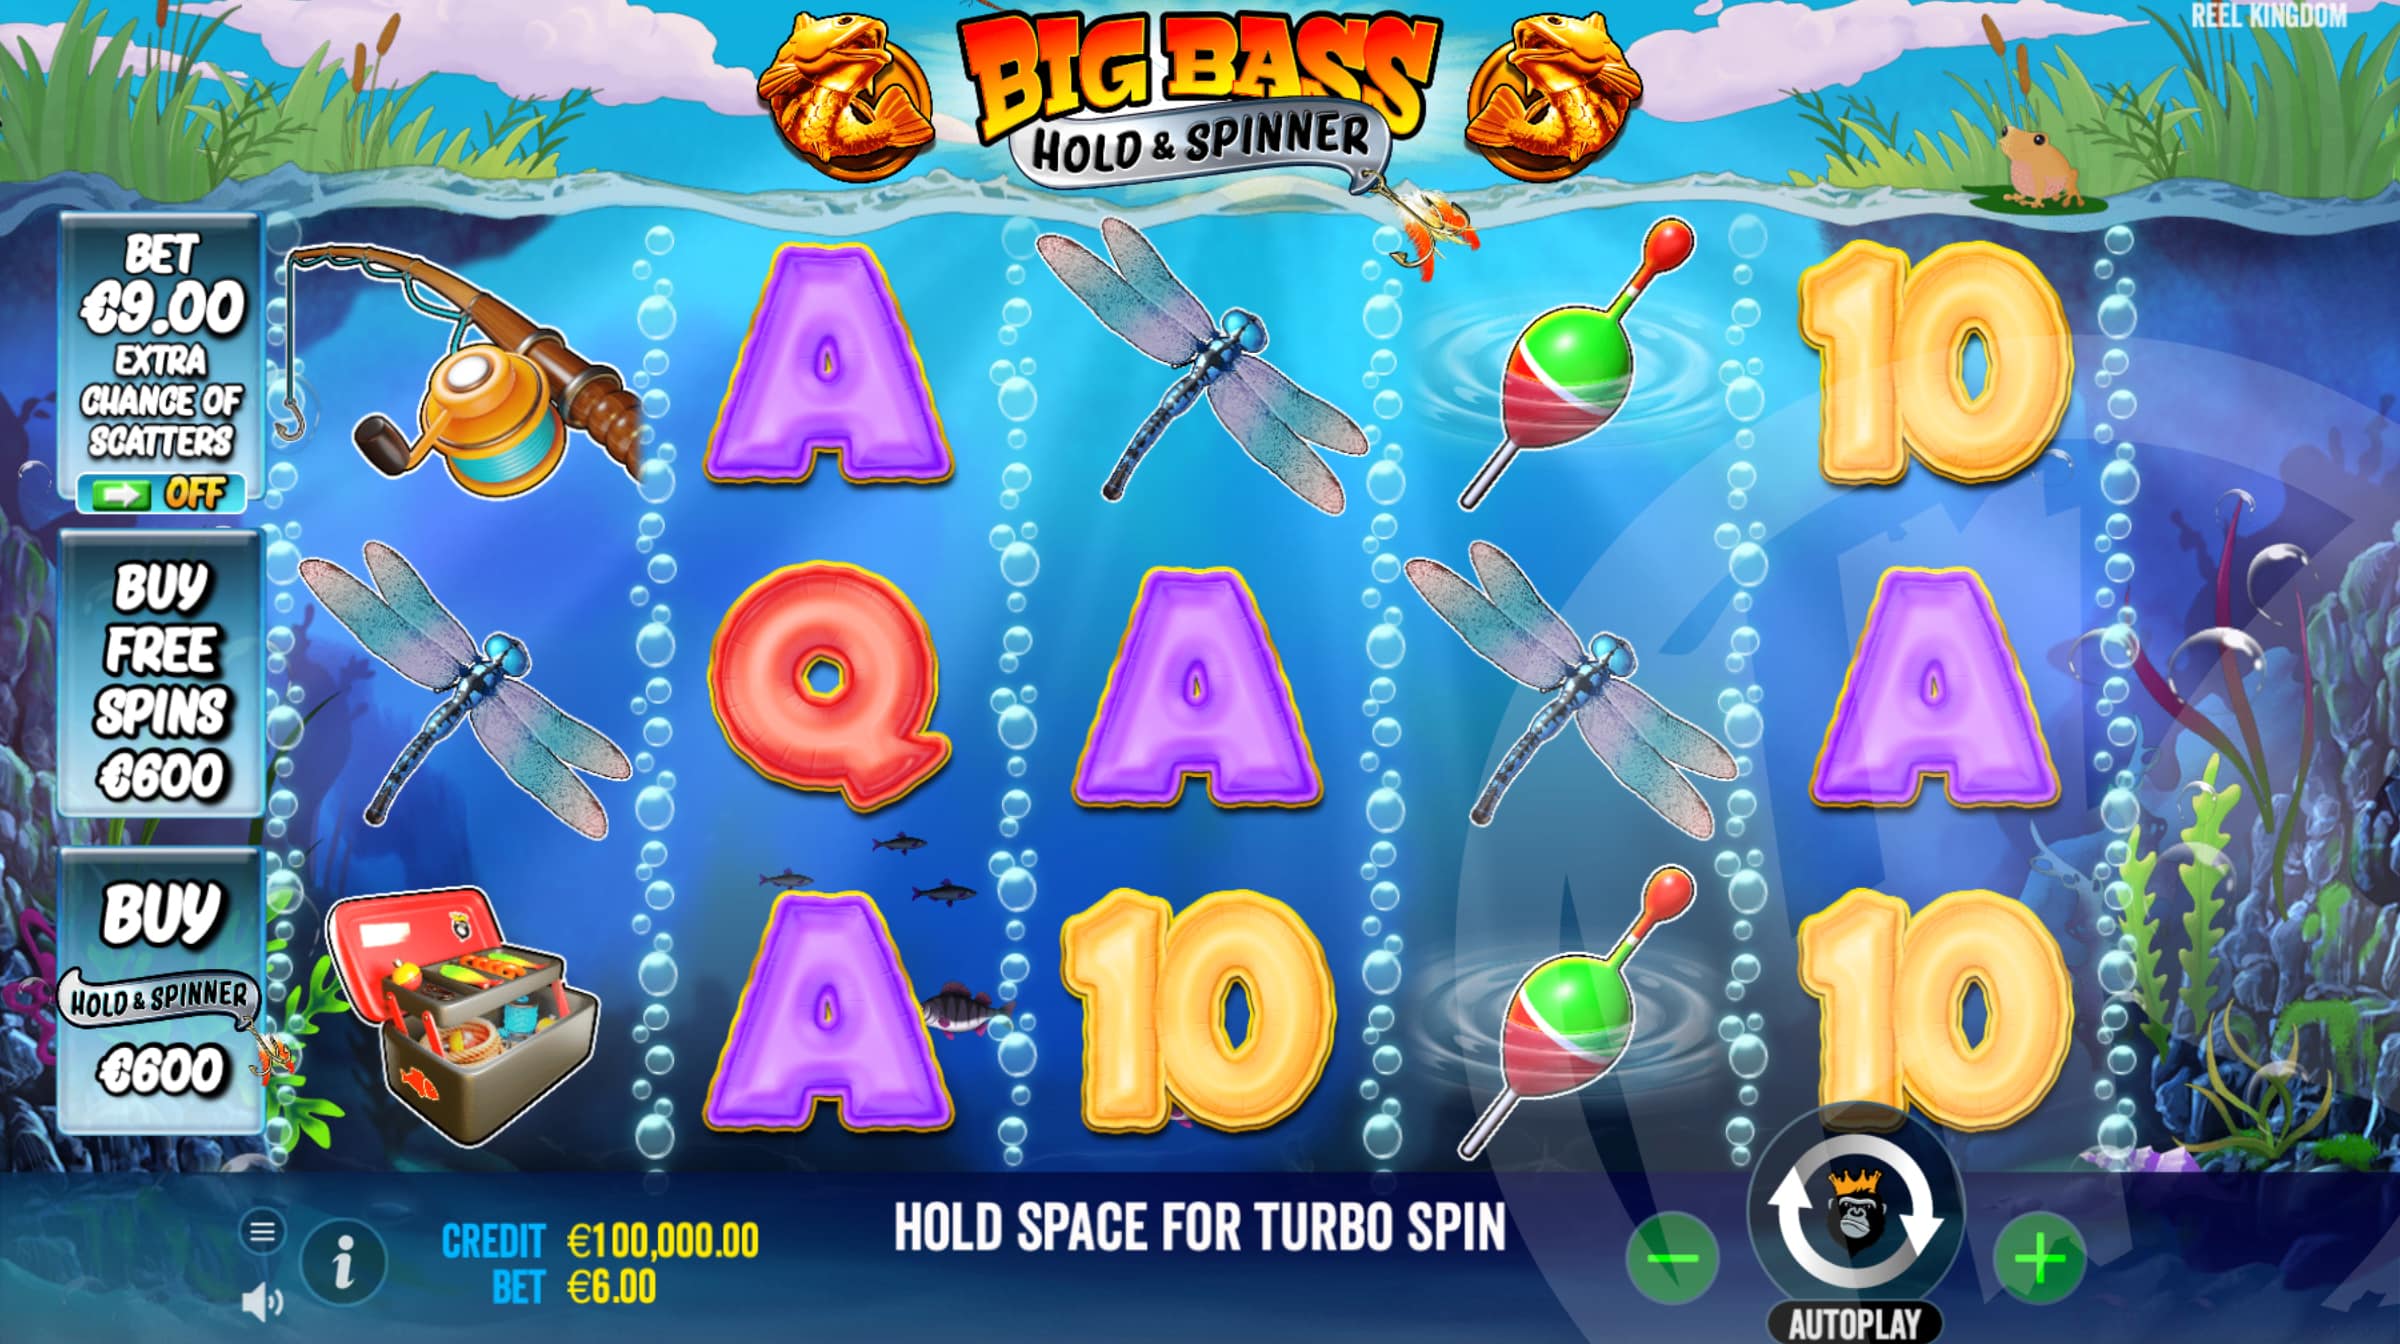 Big Bass Bonanza - Hold & Spinner Base Game